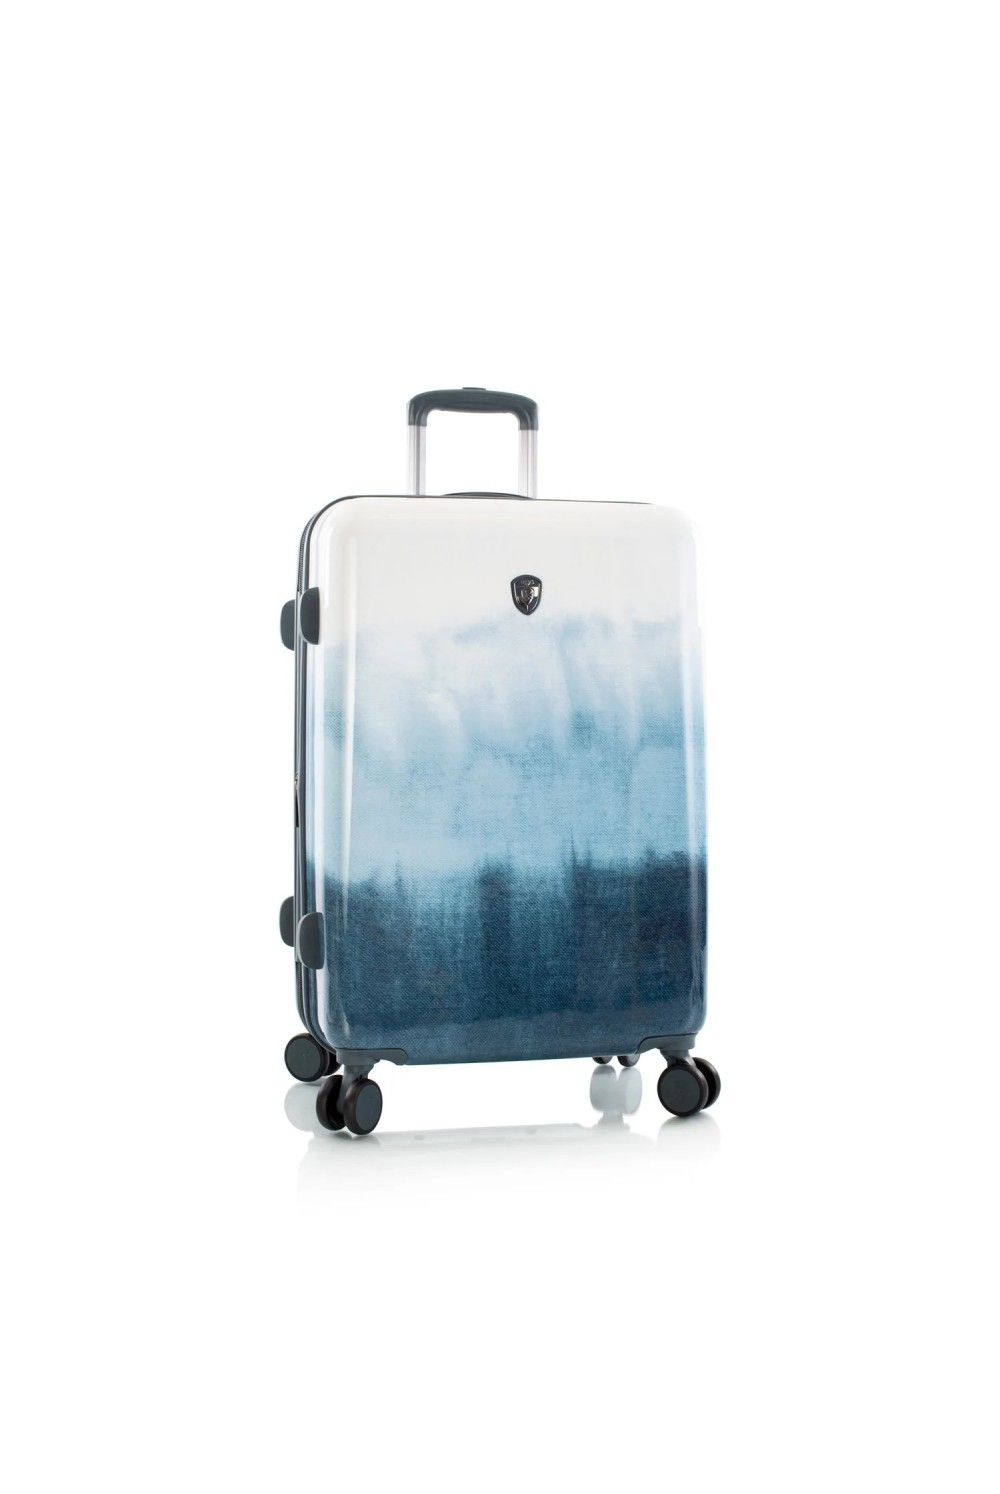 Koffer Heys Blue Fashion 4 Rad Medium 66cm erweiterbar | Hartschalenkoffer